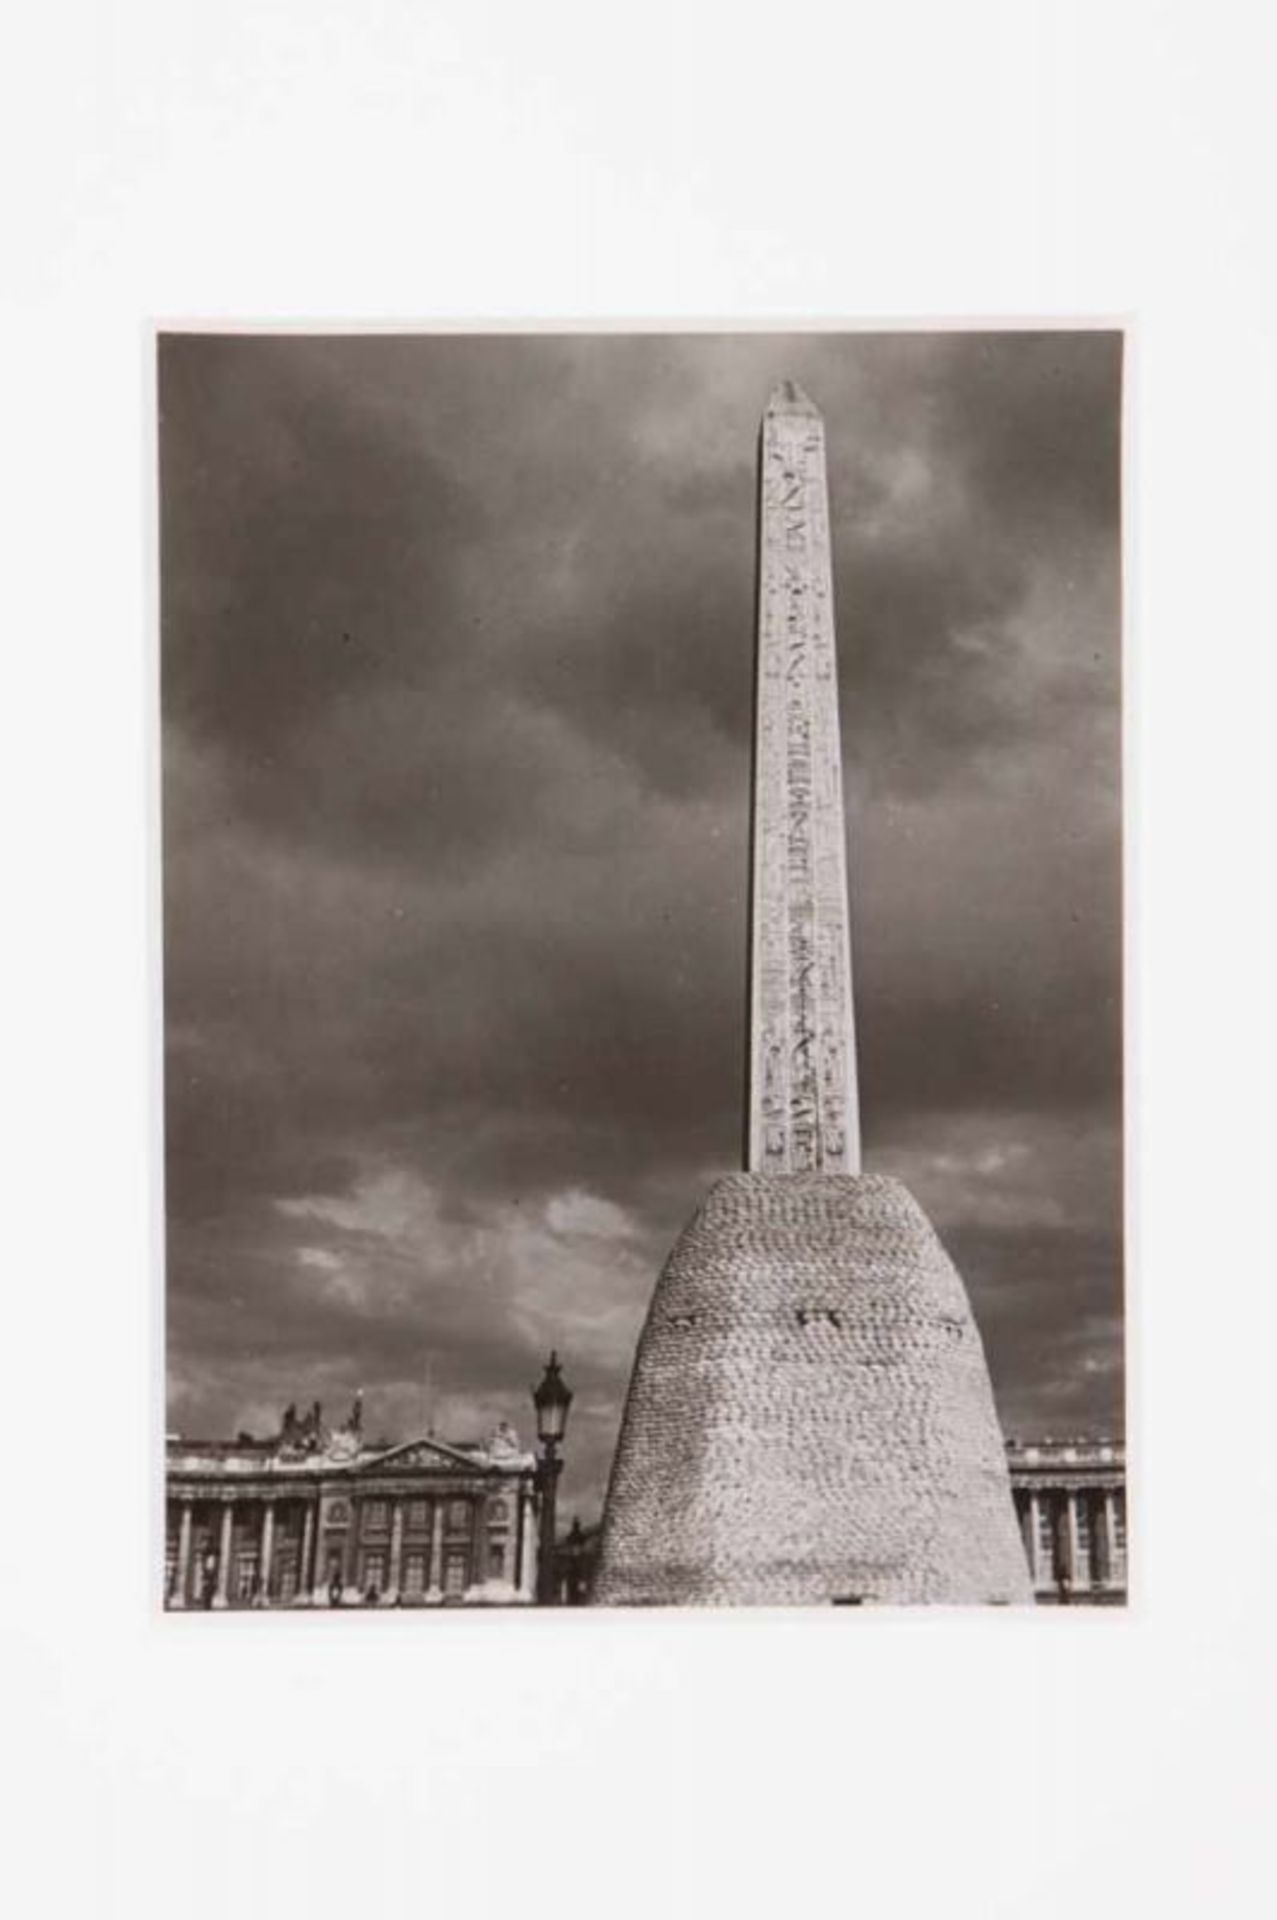 Brassaï "L'Obélisque Place de la Concorde" Gelatine silver press print With artist's stamp and